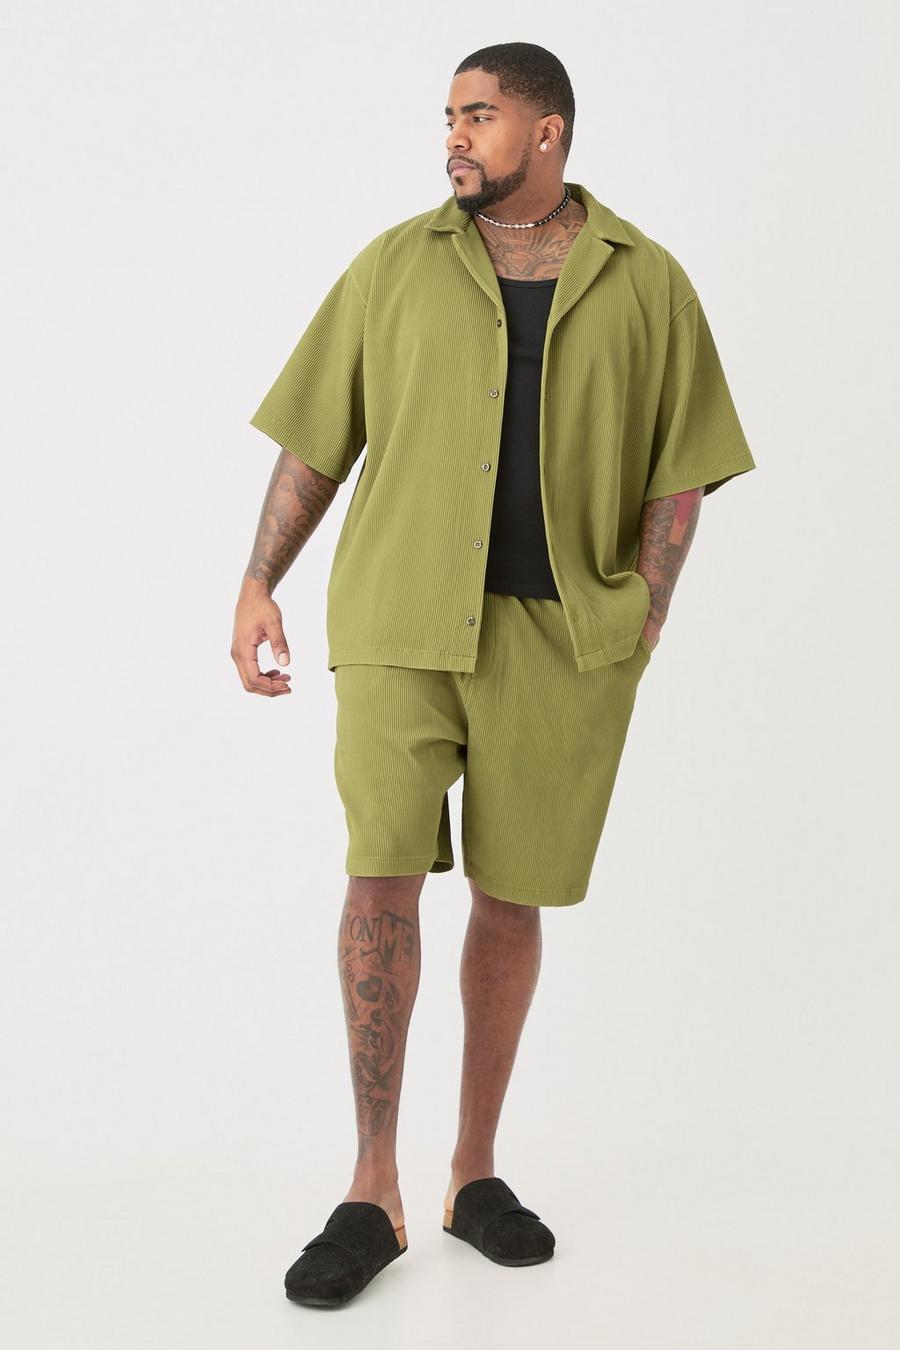 Khaki Plus Kakifärgad skjorta med bowlingkrage och shorts